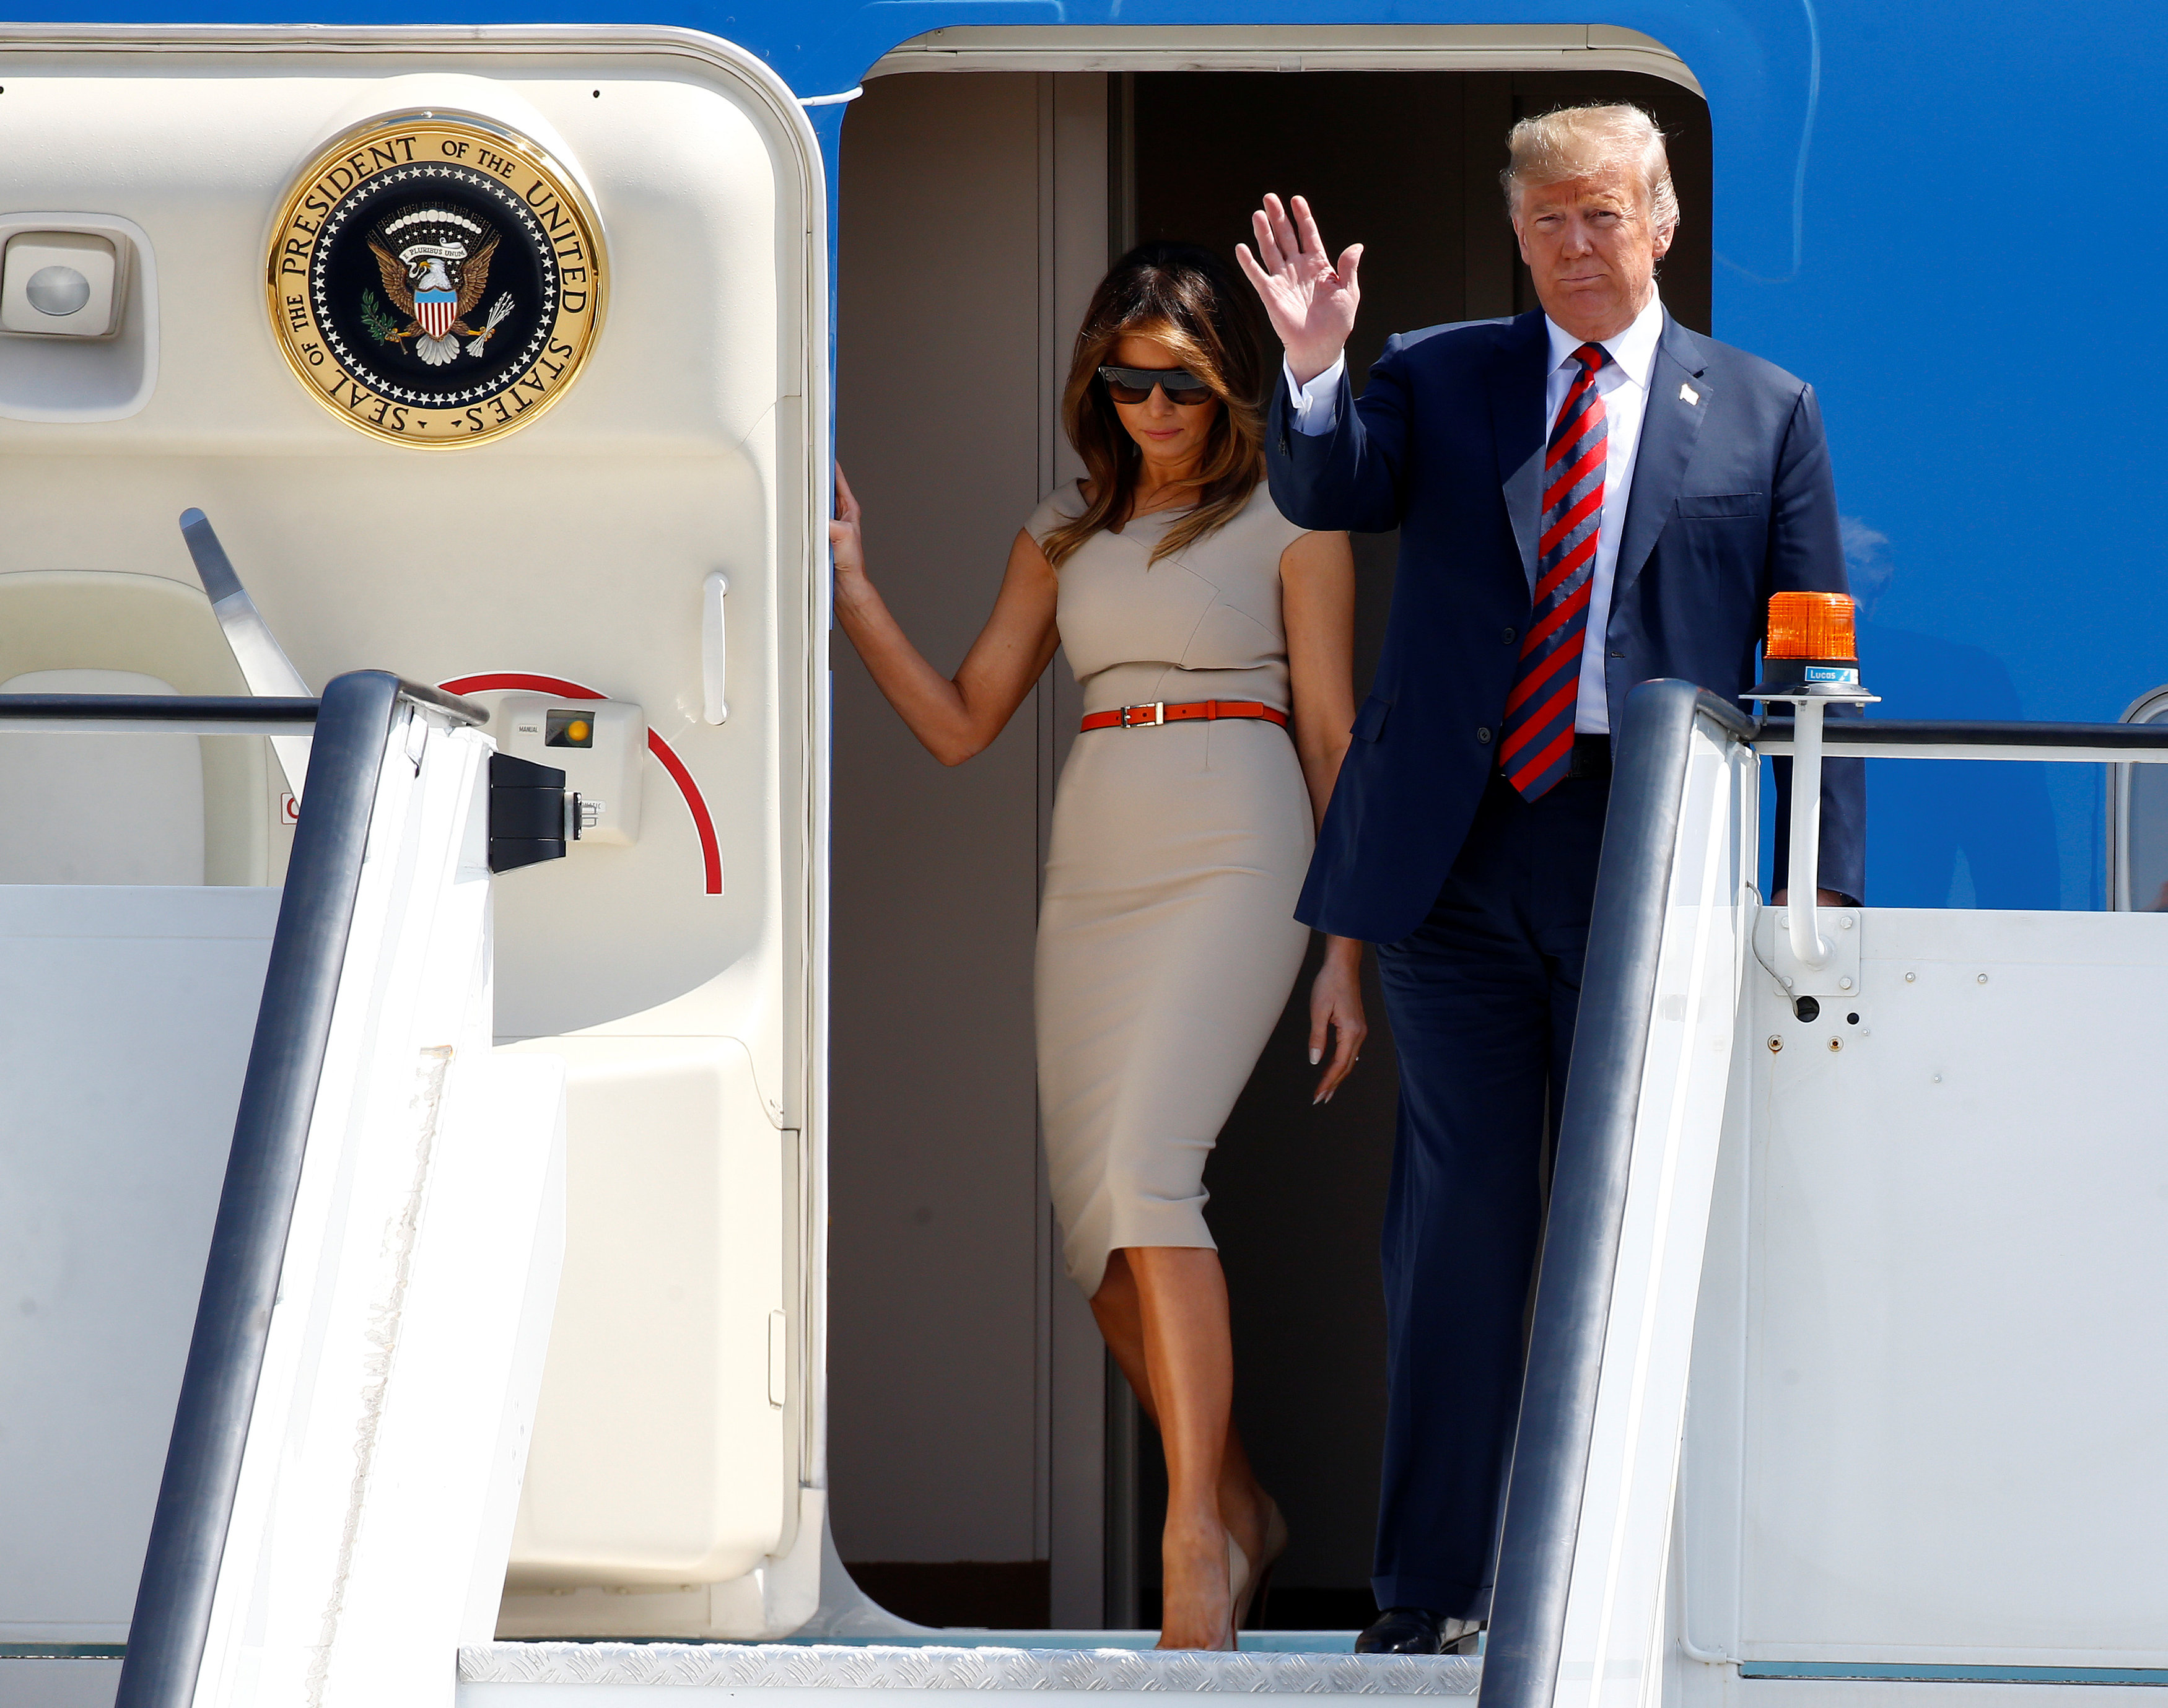 وصول الرئيس الأميركي ترامب وعقيلته ميلانيا إلى مطار ستانستيد في لندن. هنري نيكولز/رويترز